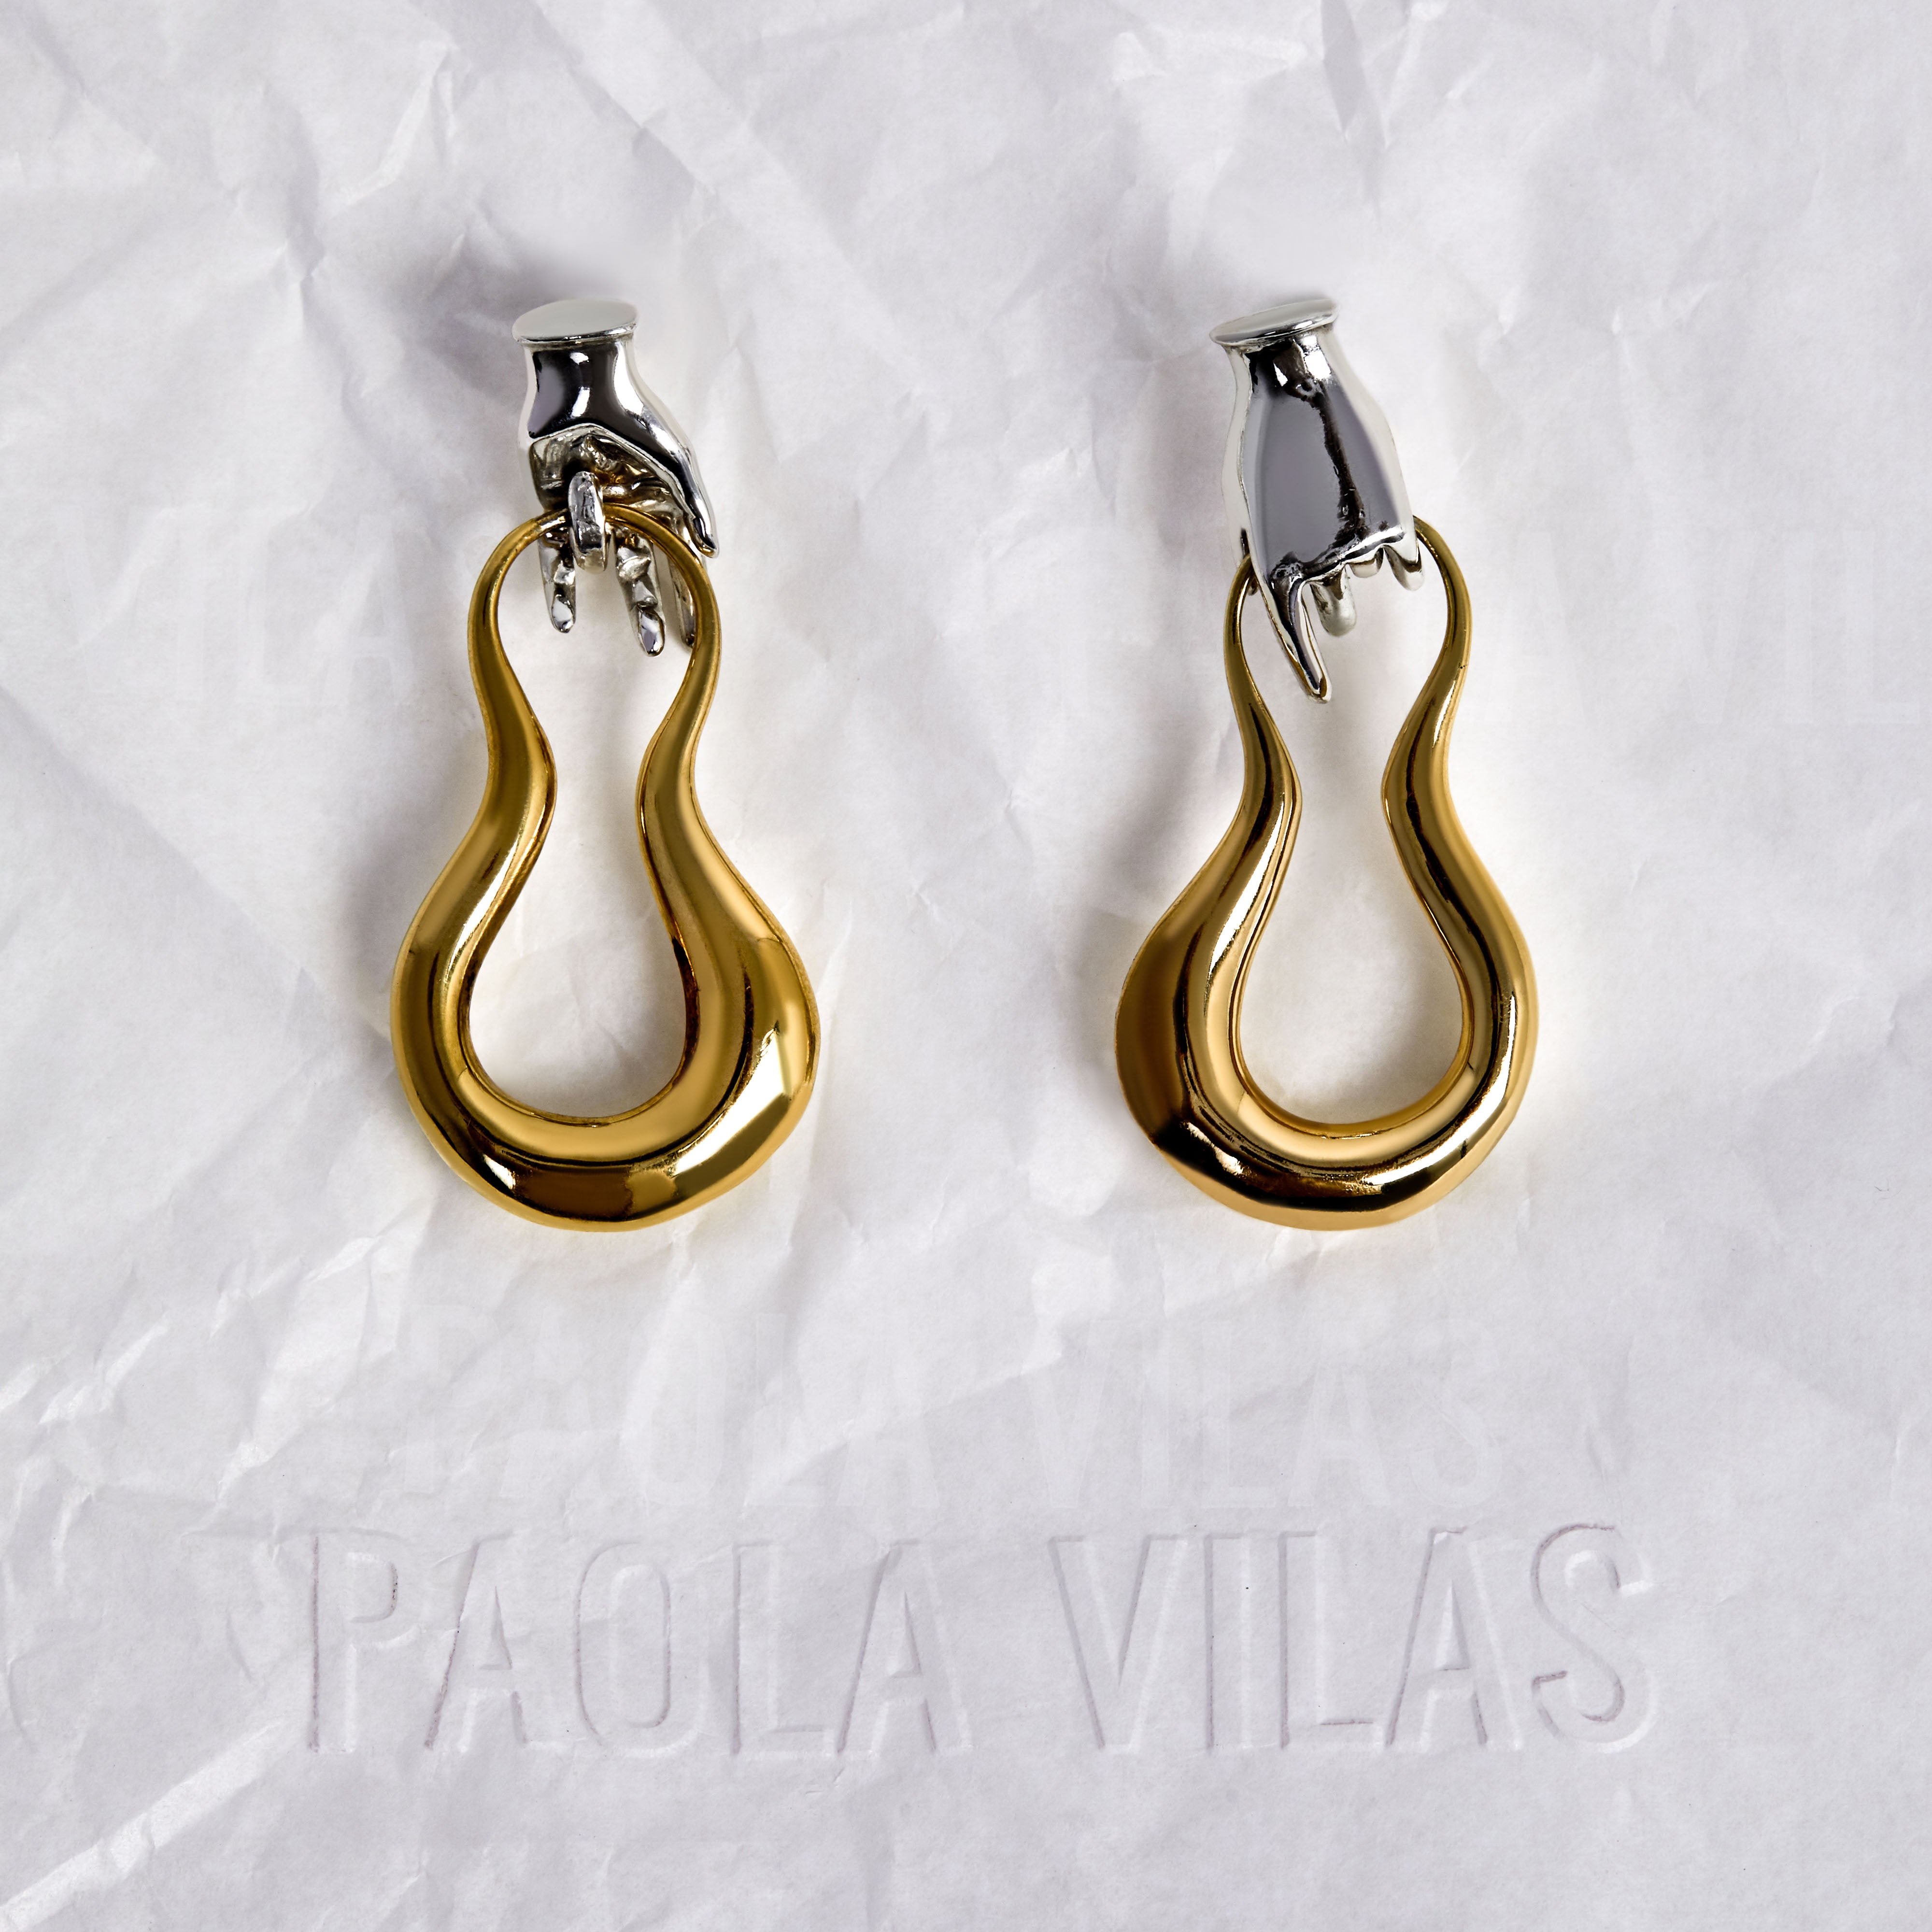 Paola Vilas Brinco Paloma é uma joia escultural vestível, feita a mão que surpreende em cada detalhe. Uma de nossas joias icônicas. 